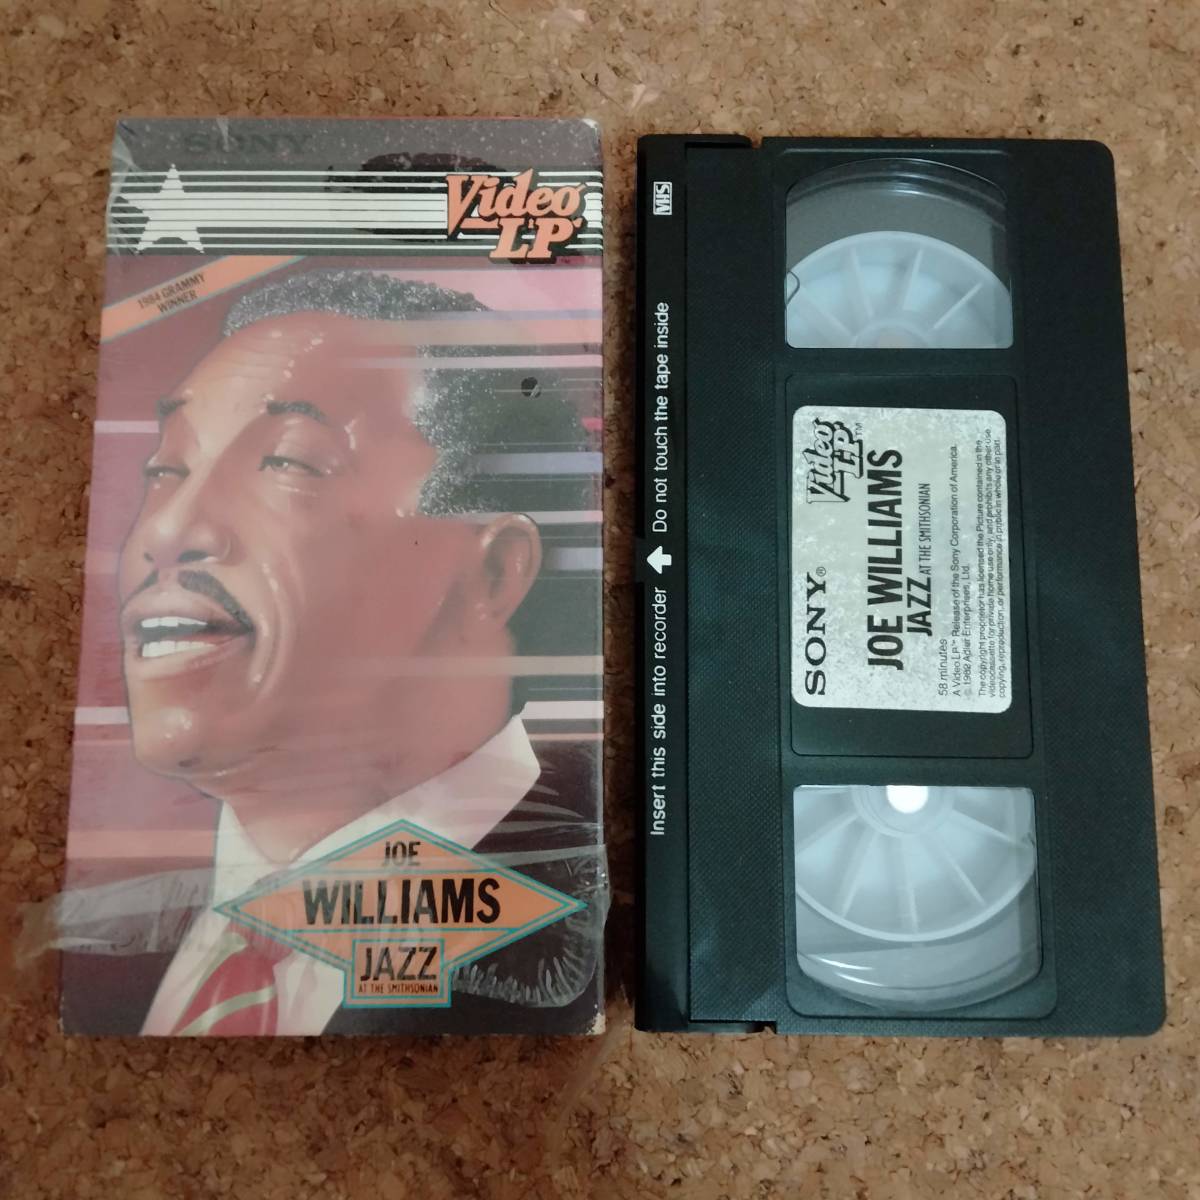  mountain ]VHS videotape Joe * Williams JOE WILLIAMS JAZZ AT THE SMITHSONIAN